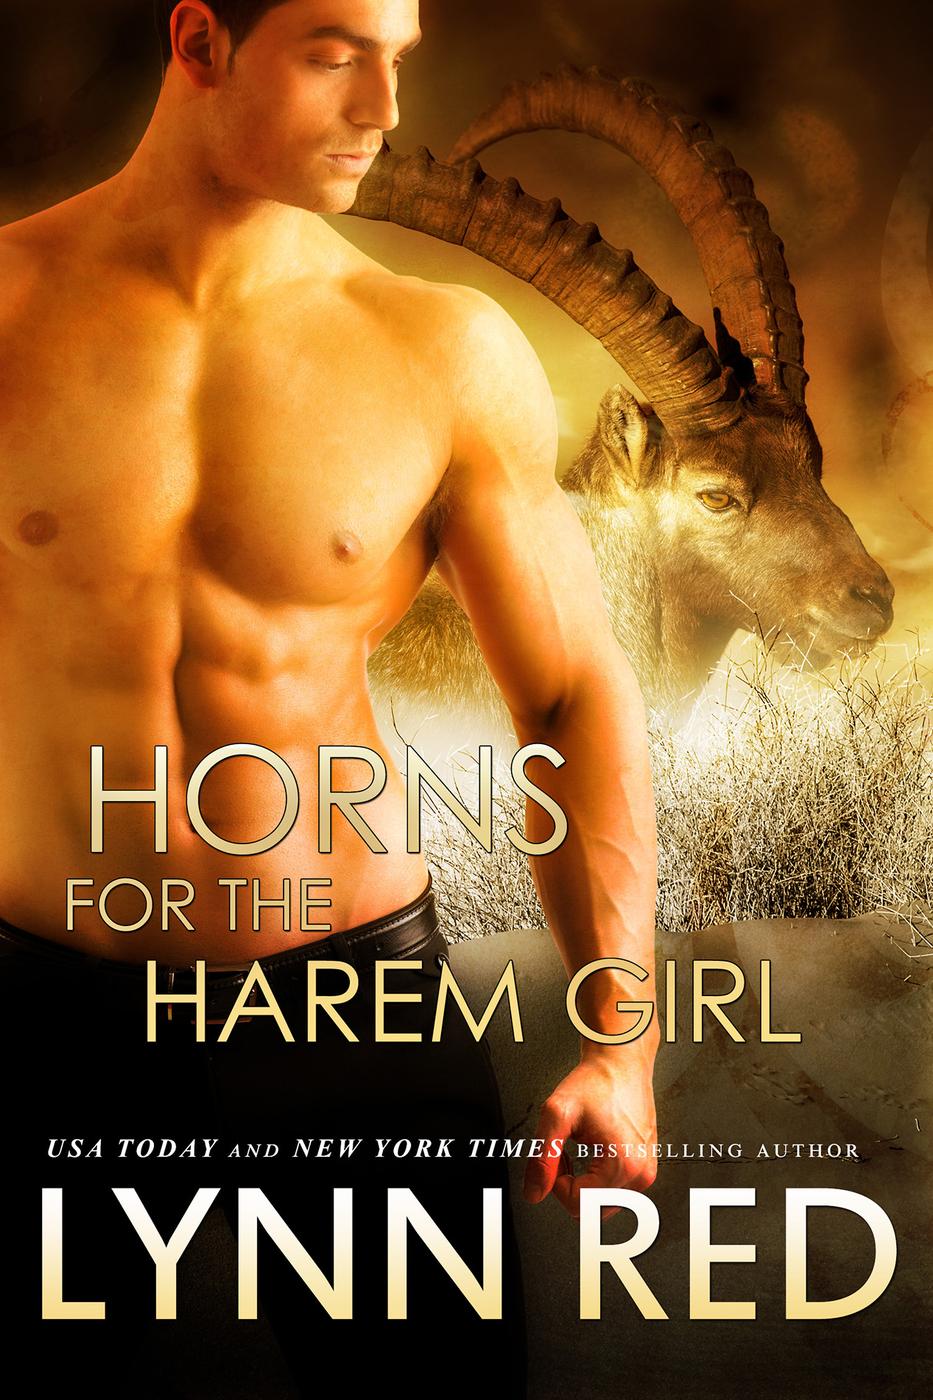 Horns for the Harem Girl by Lynn Red